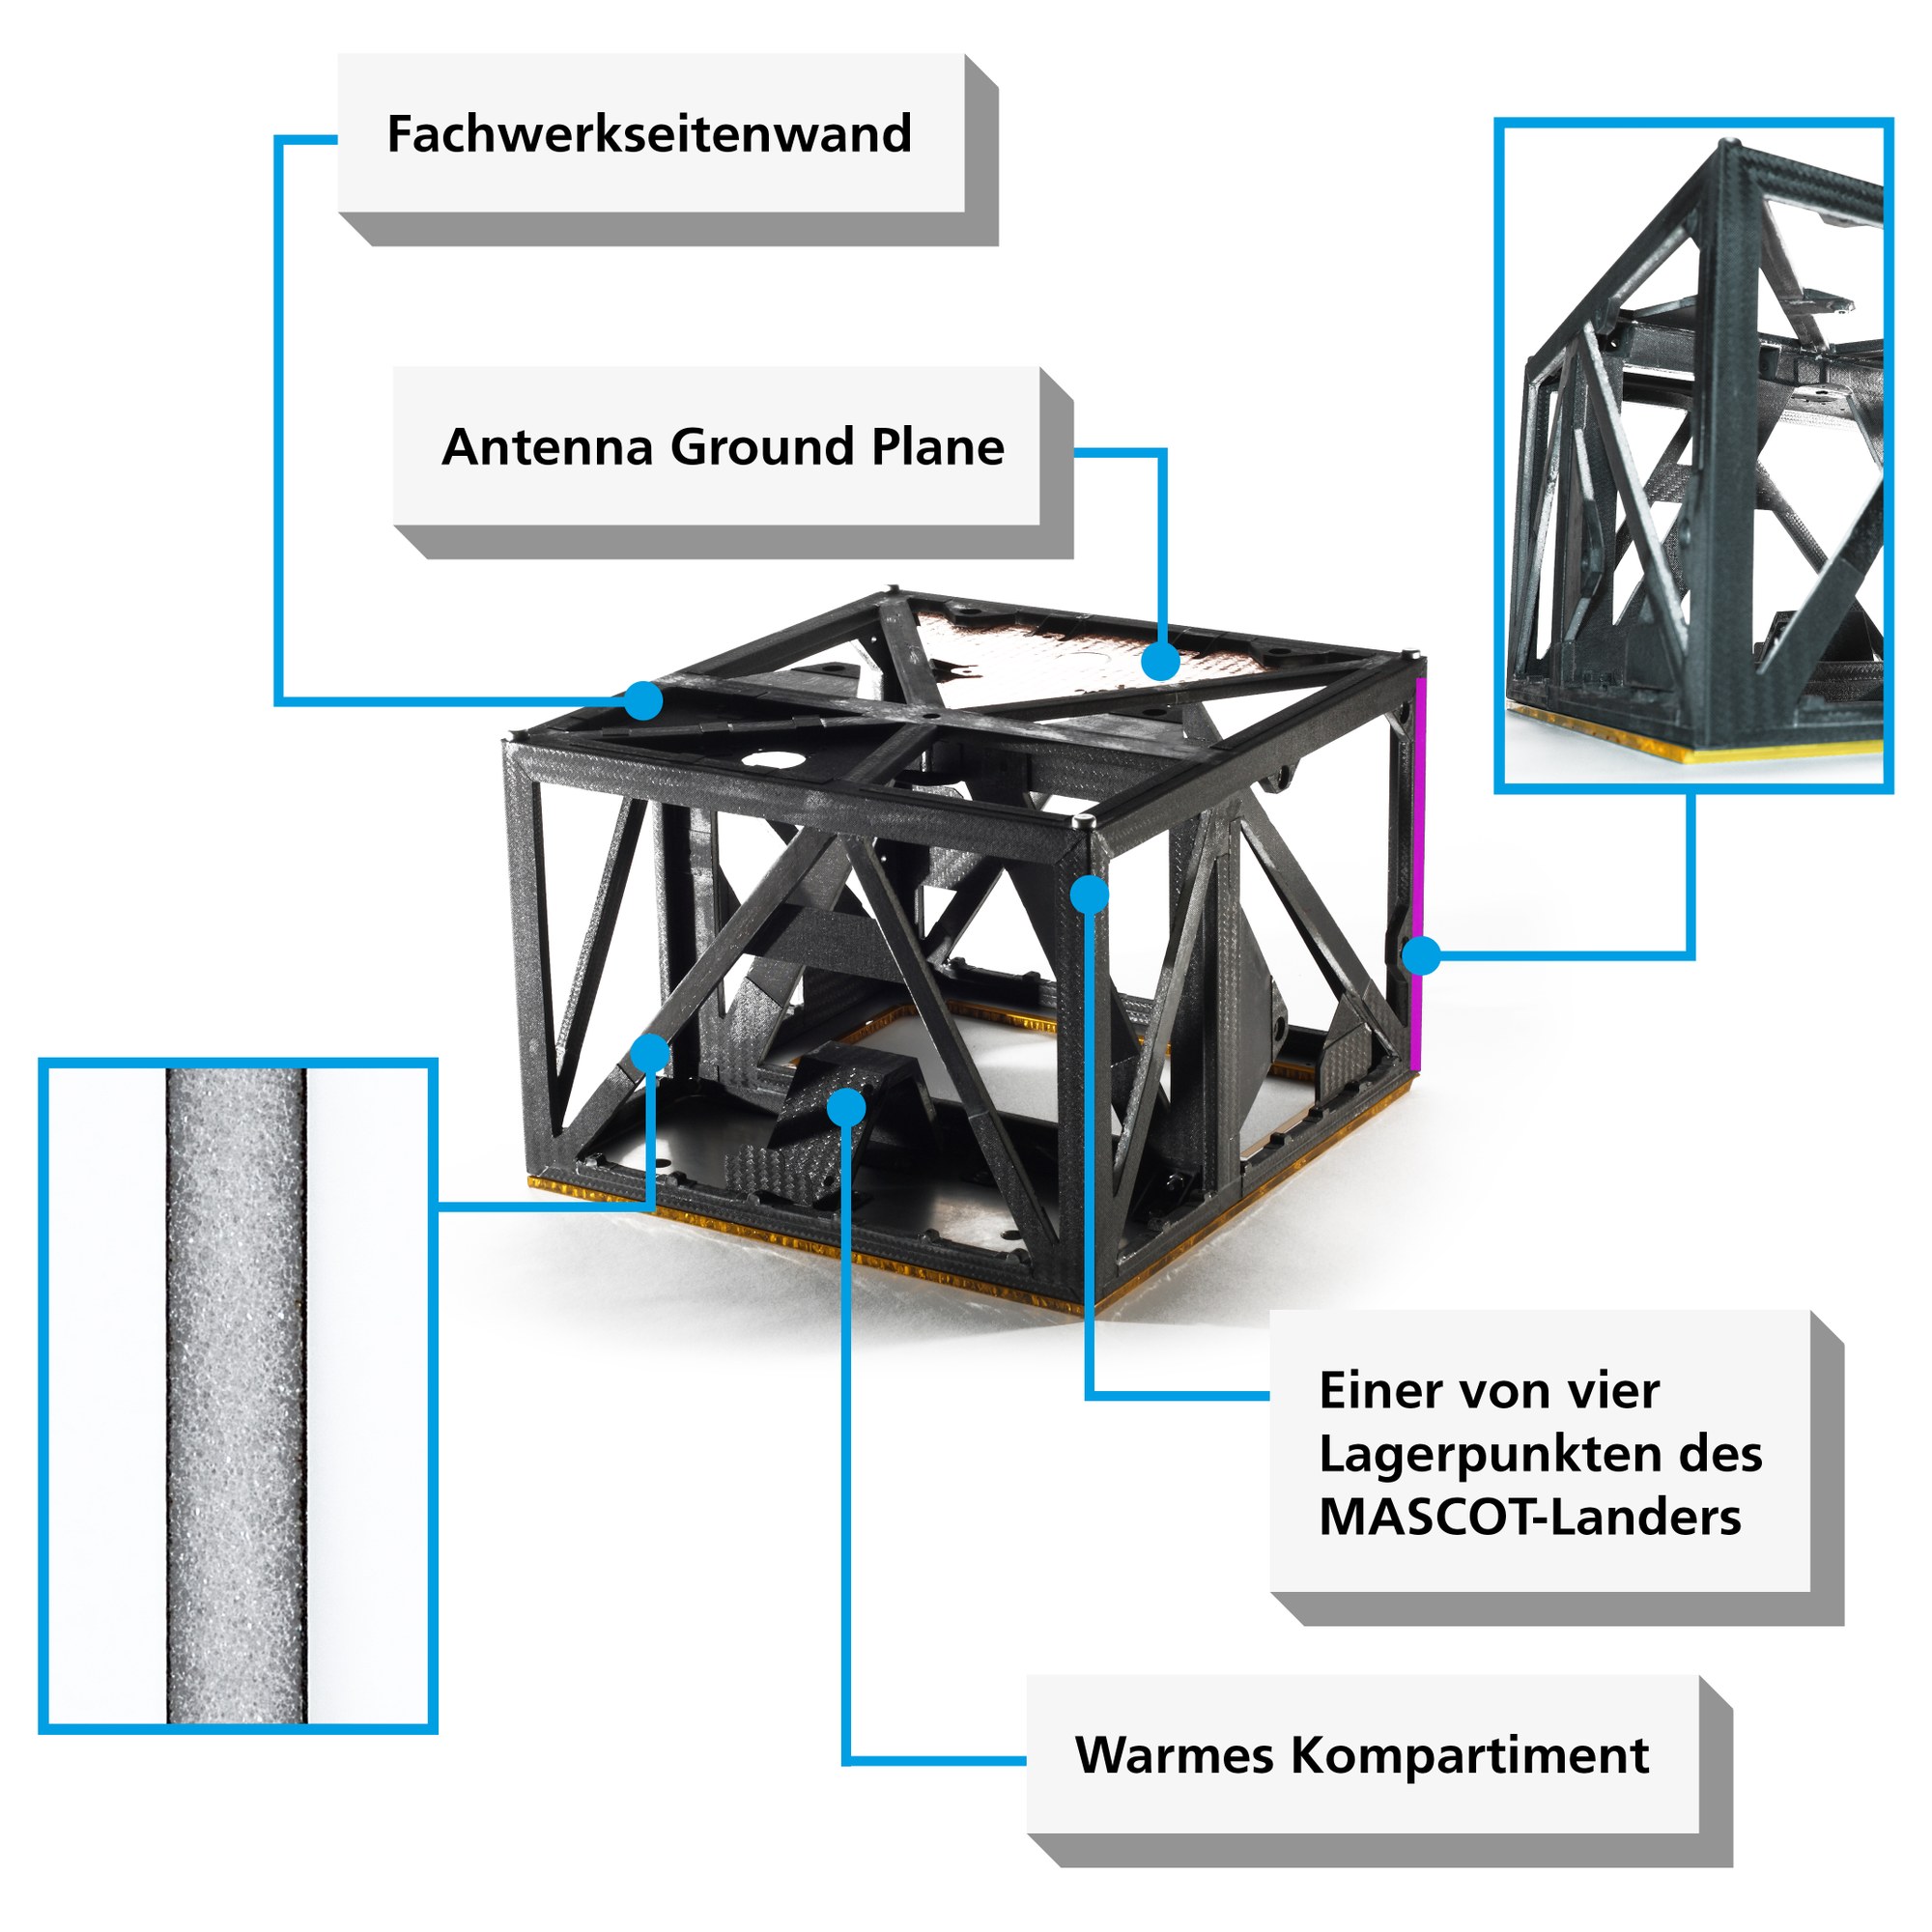 Abbildung 3: Faserverbundstruktur der MASCOT-Lander-Flugeinheit mit elektrisch leitender Antenna Ground Plane aus beschichtetem CFK